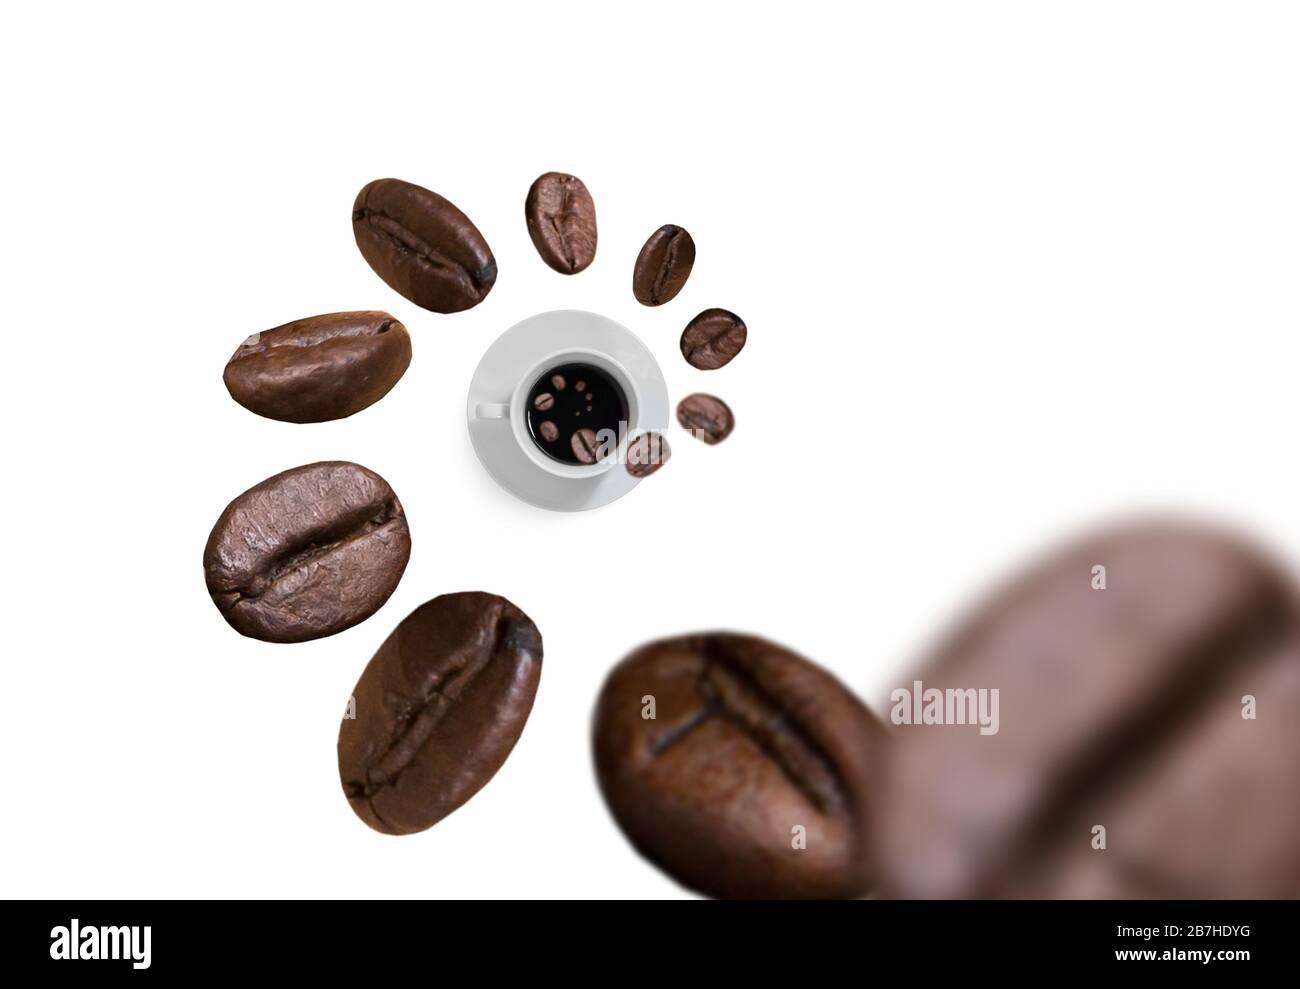 Geröstete Kaffeebohnen fallen in die Kaffeetasse auf weißem Hintergrund. Konzept für die Werbung von Kaffeeprodukten. Selektiver Fokus. Stockfoto